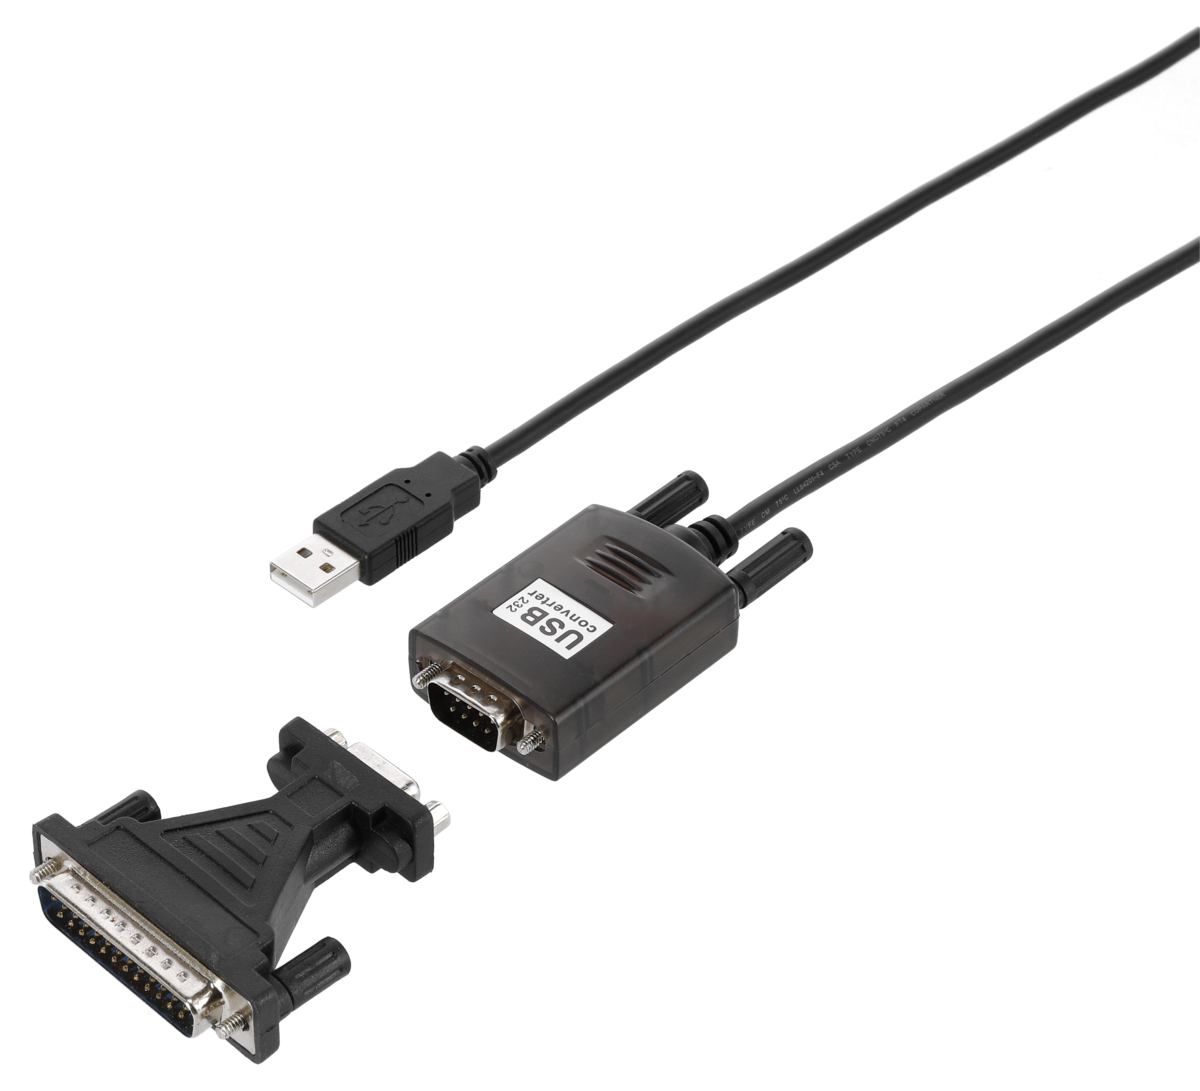 Adapteri USB – sarjaportti